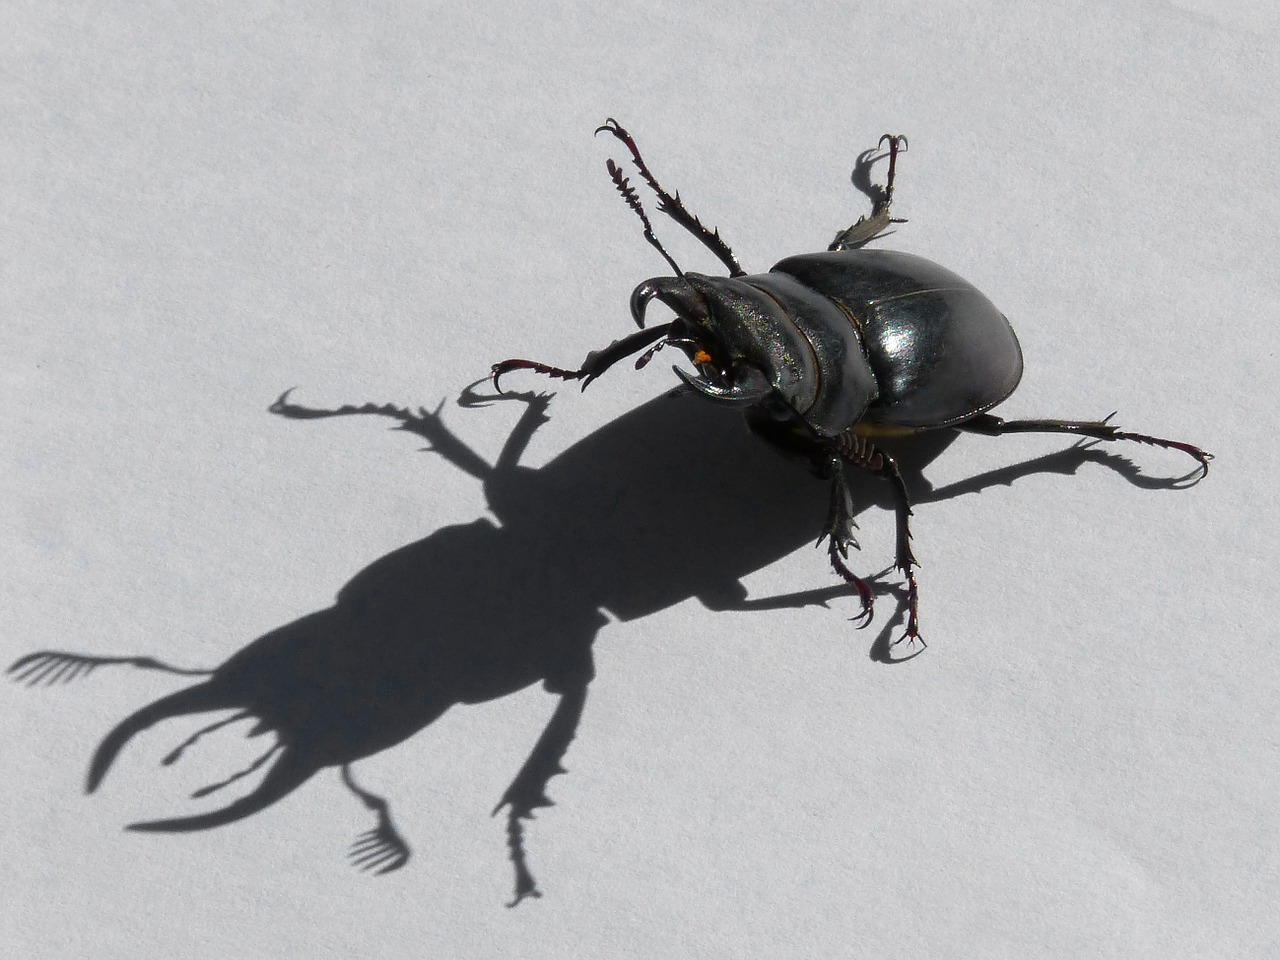 beetle lucanus cervus stag-beetle free photo